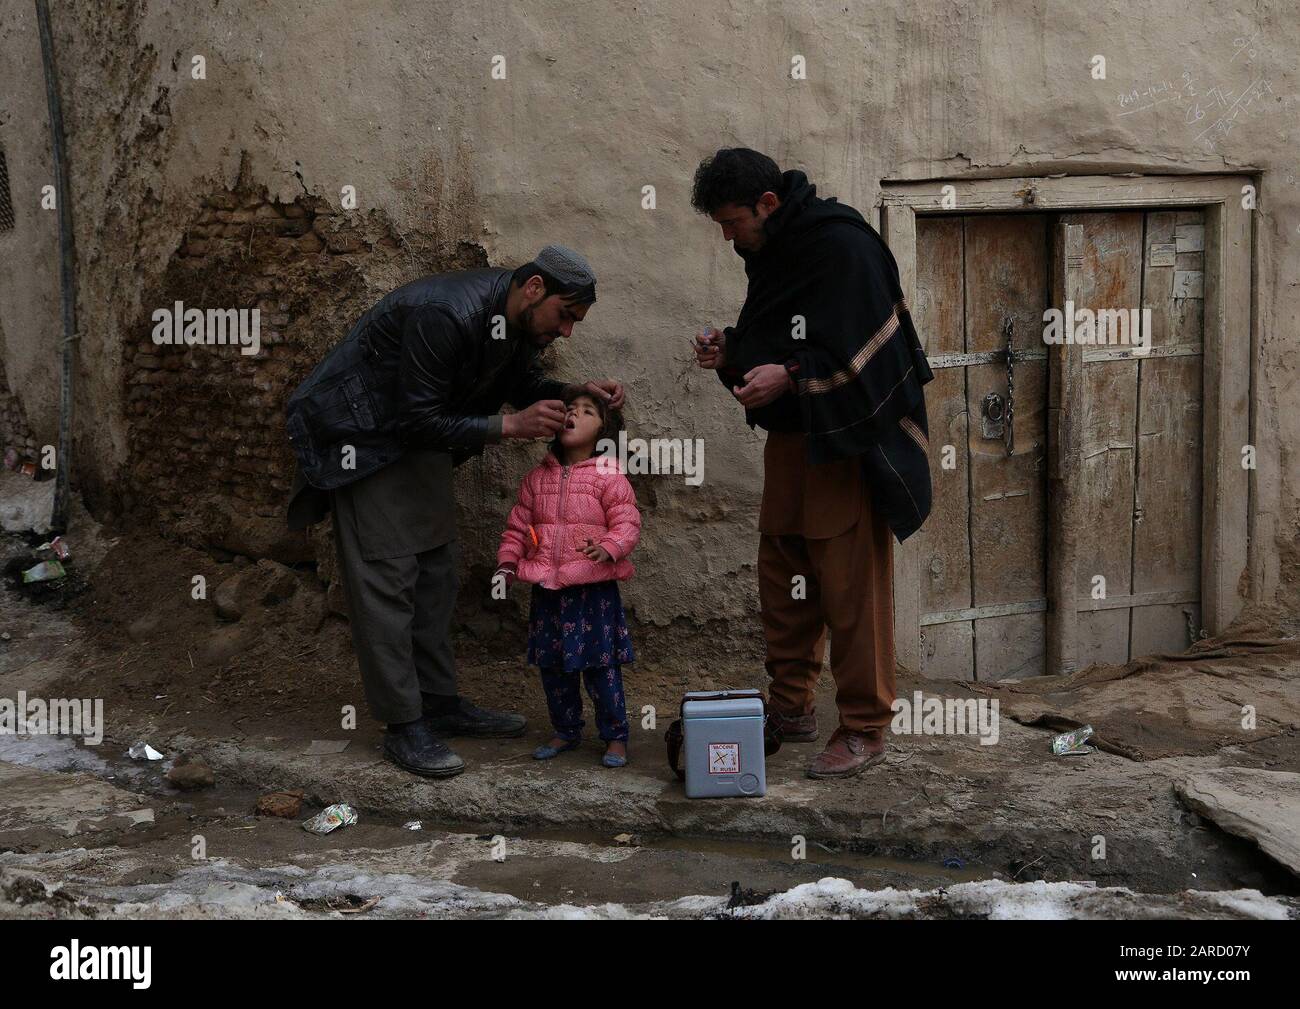 (200127) -- GHAZNI (AFGANISTÁN), 27 de enero de 2020 (Xinhua) -- un trabajador de salud le da dosis de vacunación contra la polio a un niño durante una campaña de vacunación en la provincia de Ghazni, Afganistán, el 27 de enero de 2020. El Ministerio de Salud Pública afgano lanzó una campaña nacional el lunes para dar dosis de vacunación contra la polio a 9.1 millones de niños menores de cinco años, informó el ministerio en un comunicado. (Foto De Sayed Mominzadah/Xinhua) Foto de stock